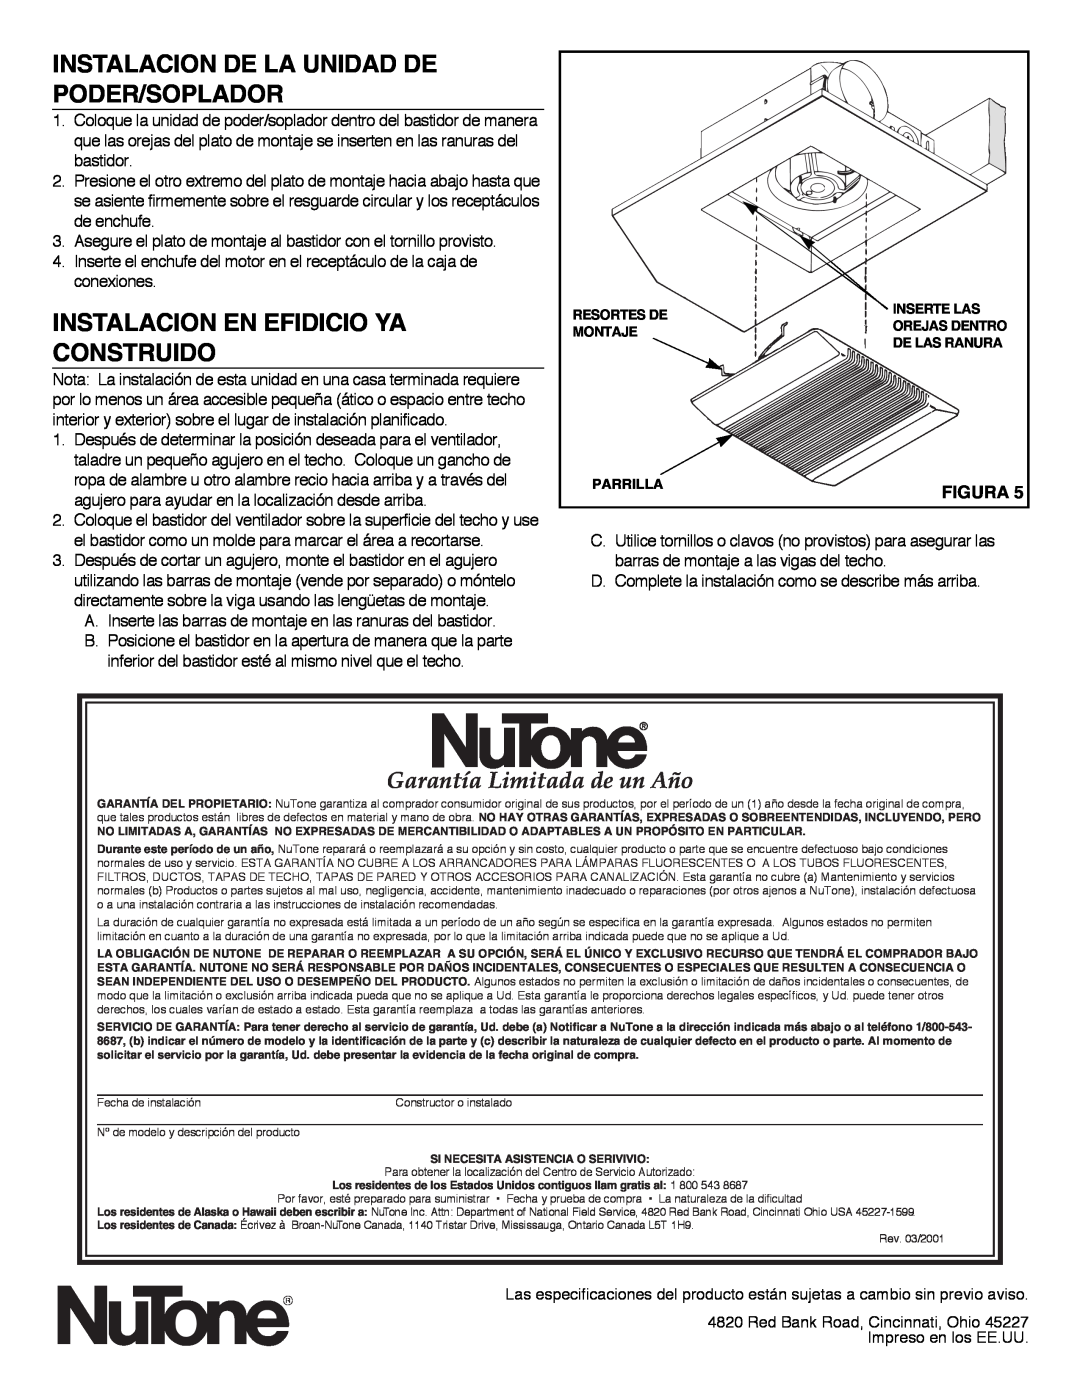 NuTone 8814R Instalacion De La Unidad De Poder/Soplador, Instalacion En Efidicio Ya Construido, Figura 